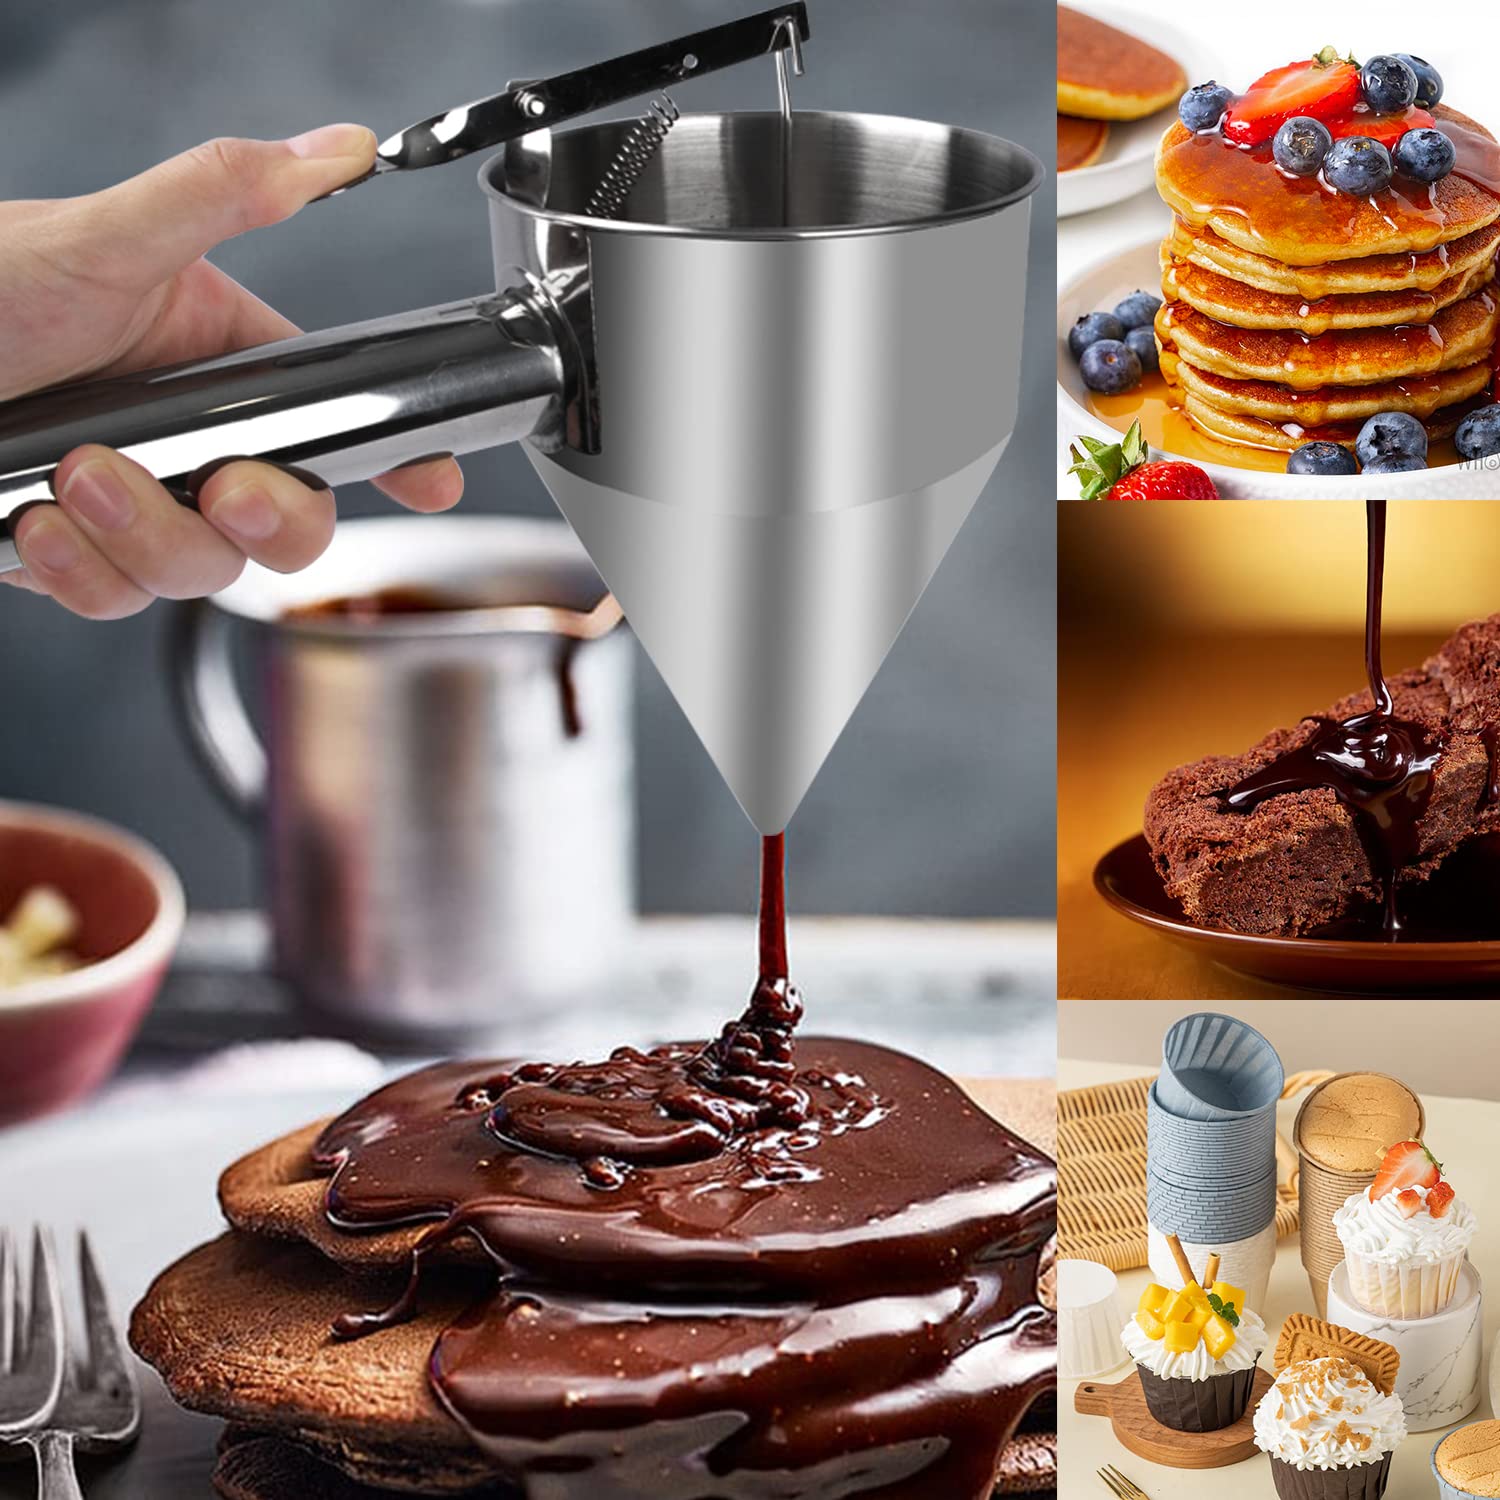 Pancake Batter Dispenser, 1200ml Funnel Cake Dispenser with Stand and Basting Brush, Batter Funnel Dispenser for Cupcakes, Waffles, or Any Baked Goods